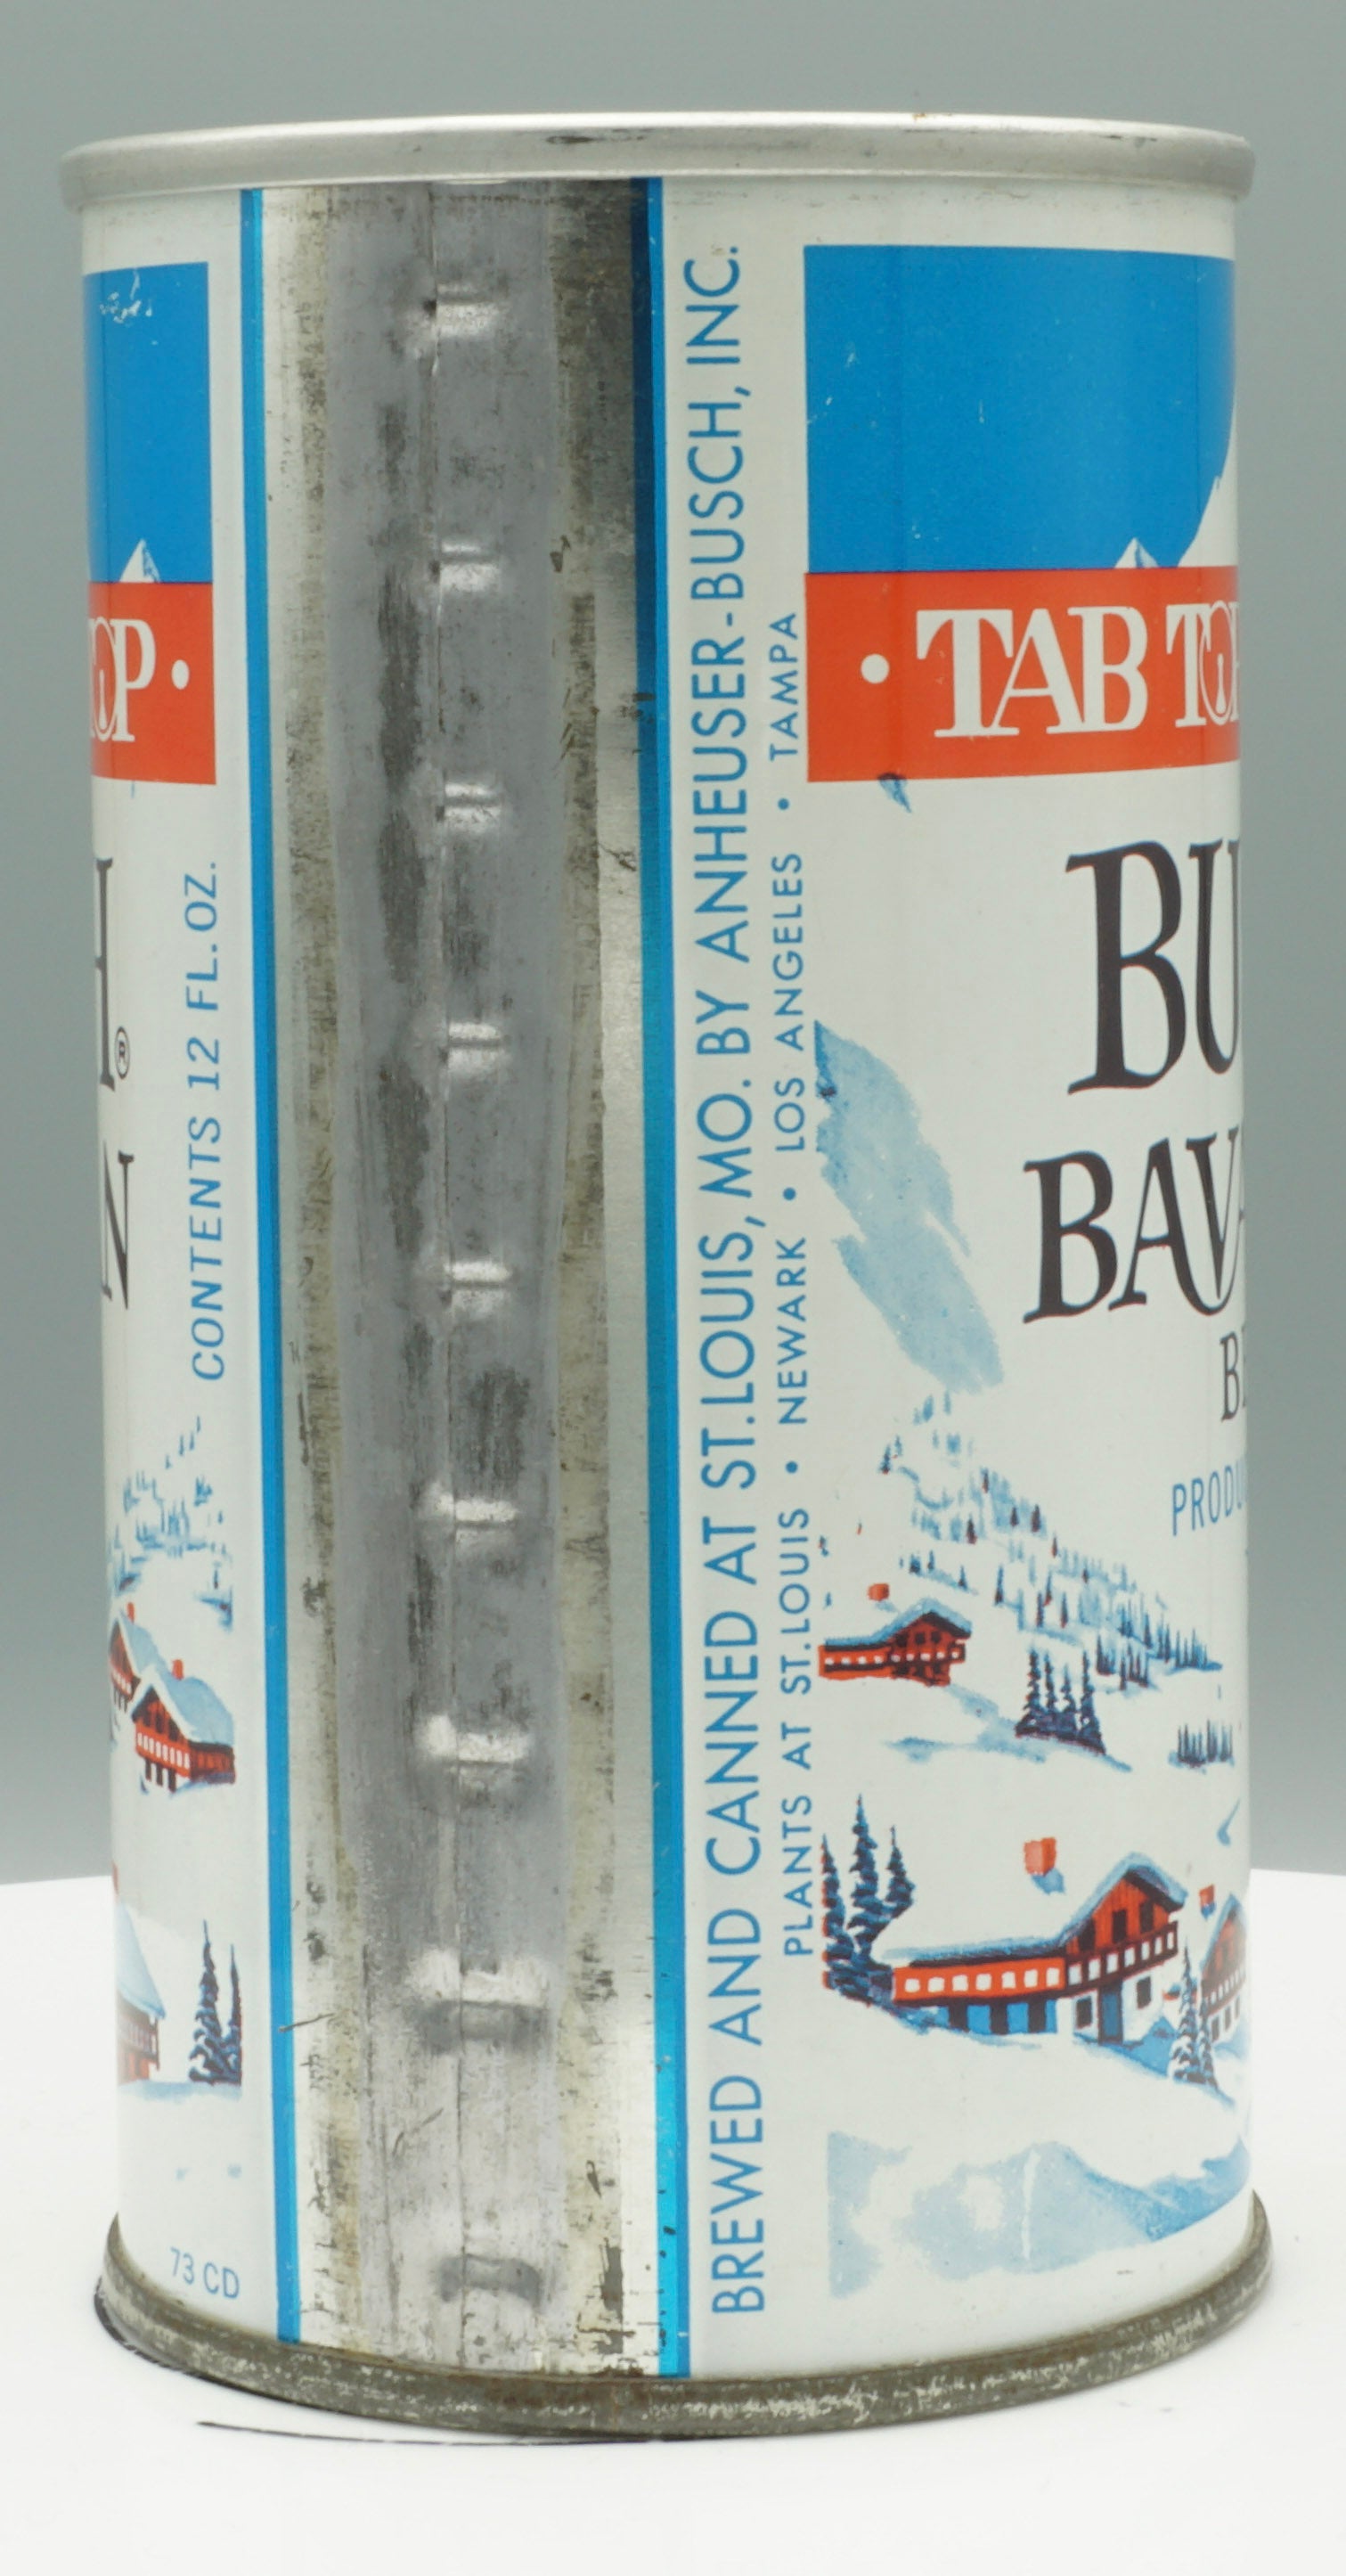 Busch Bavarian Beer (Tab Top) USBC II 52-38, Grade 1/1-